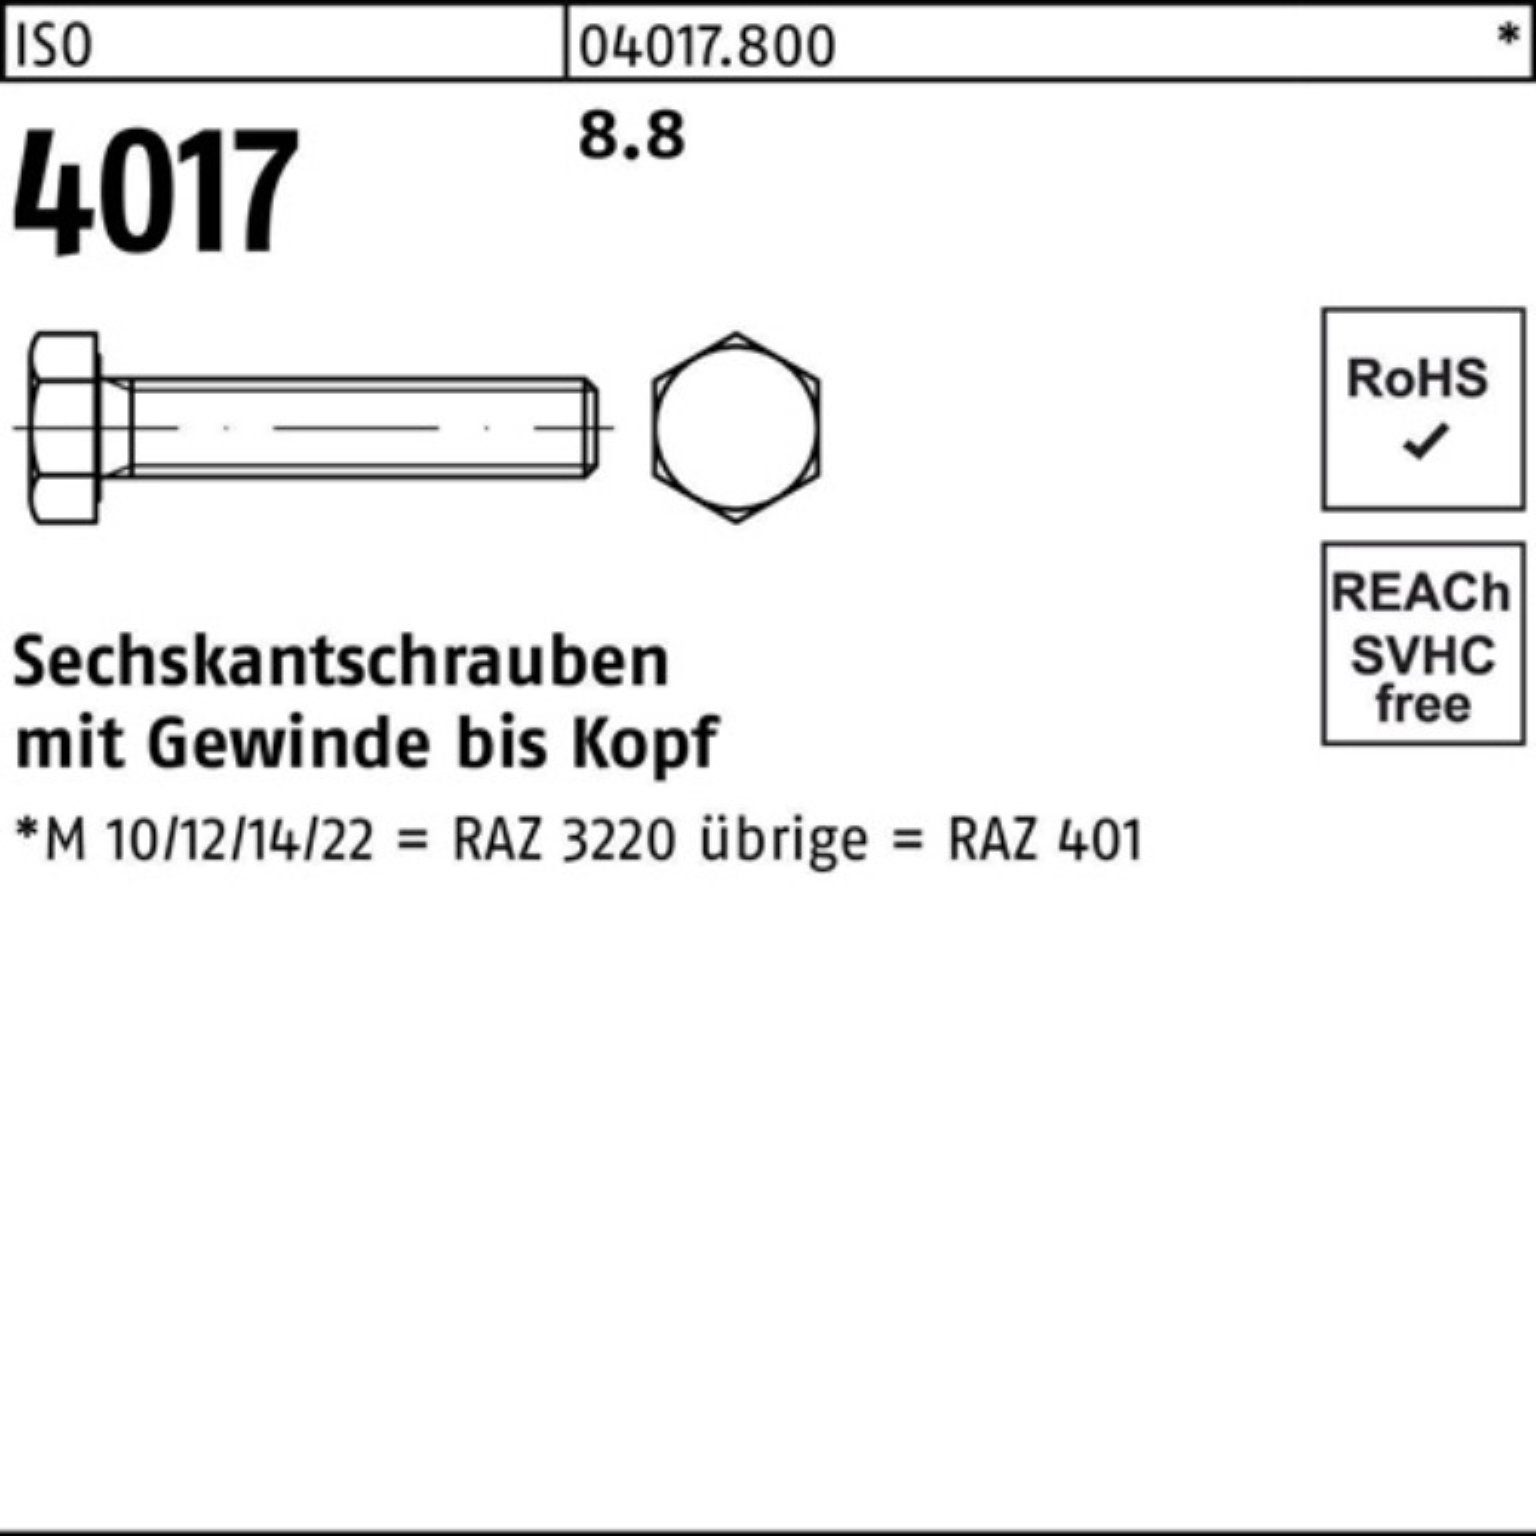 Bufab Sechskantschraube 40 M14x ISO Pack 4017 170 Stück 100er VG ISO 8.8 25 Sechskantschraube